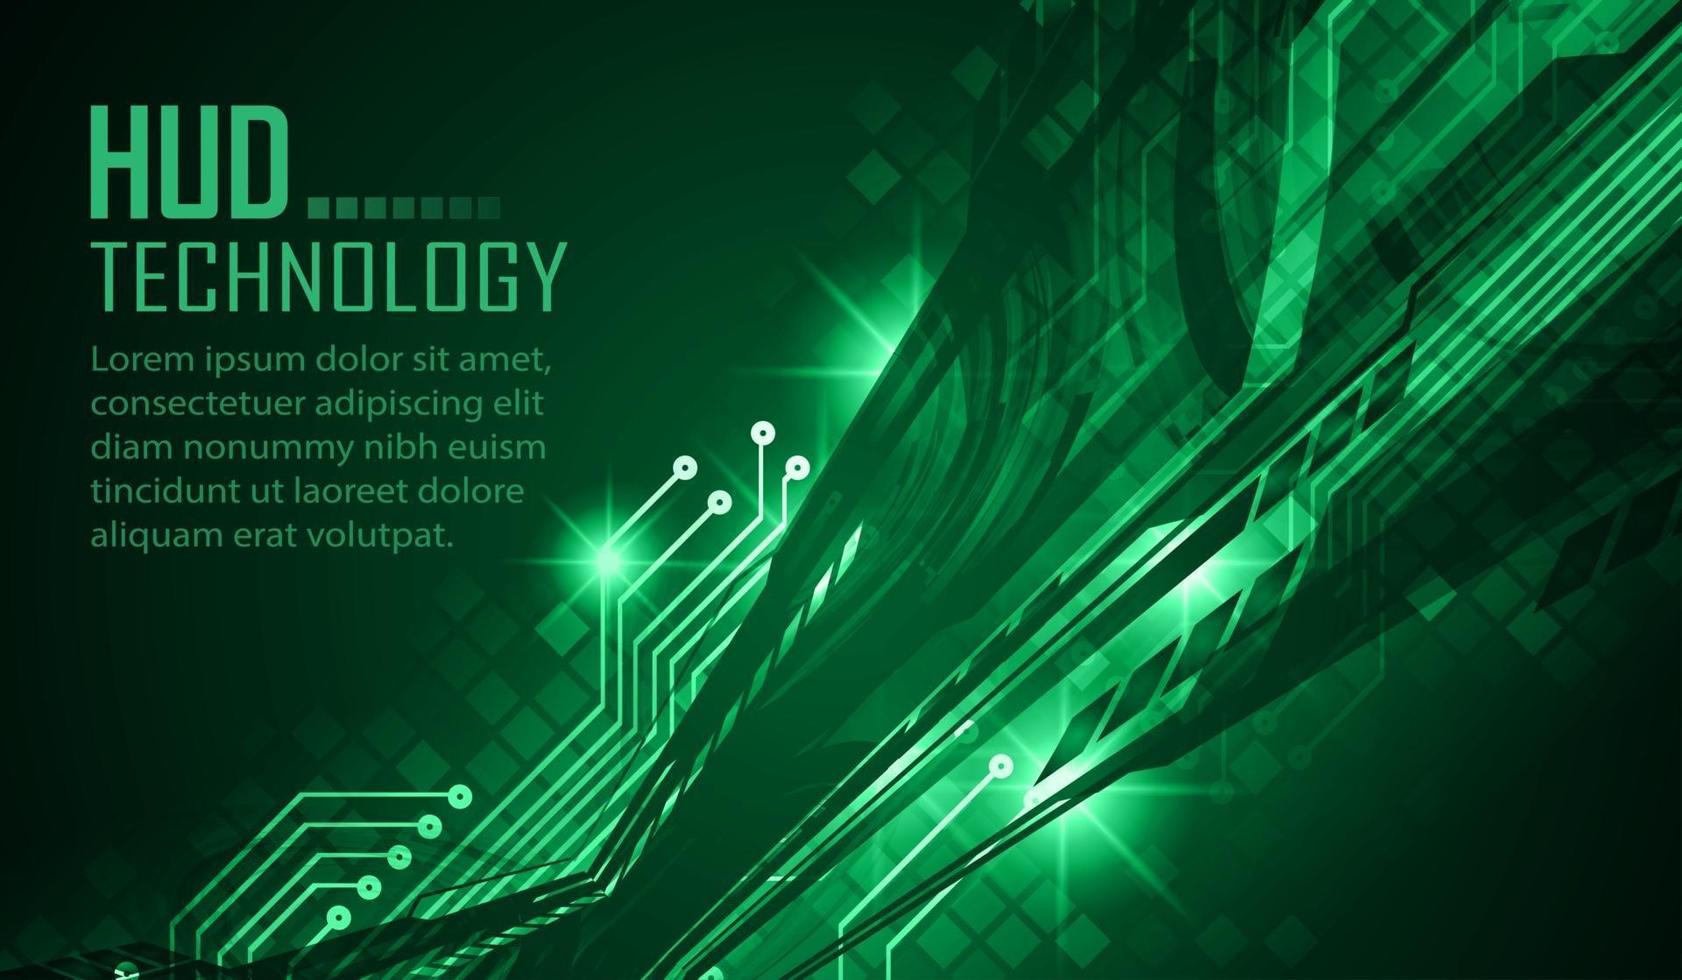 tekst cyber circuit toekomstige technologie concept achtergrond vector